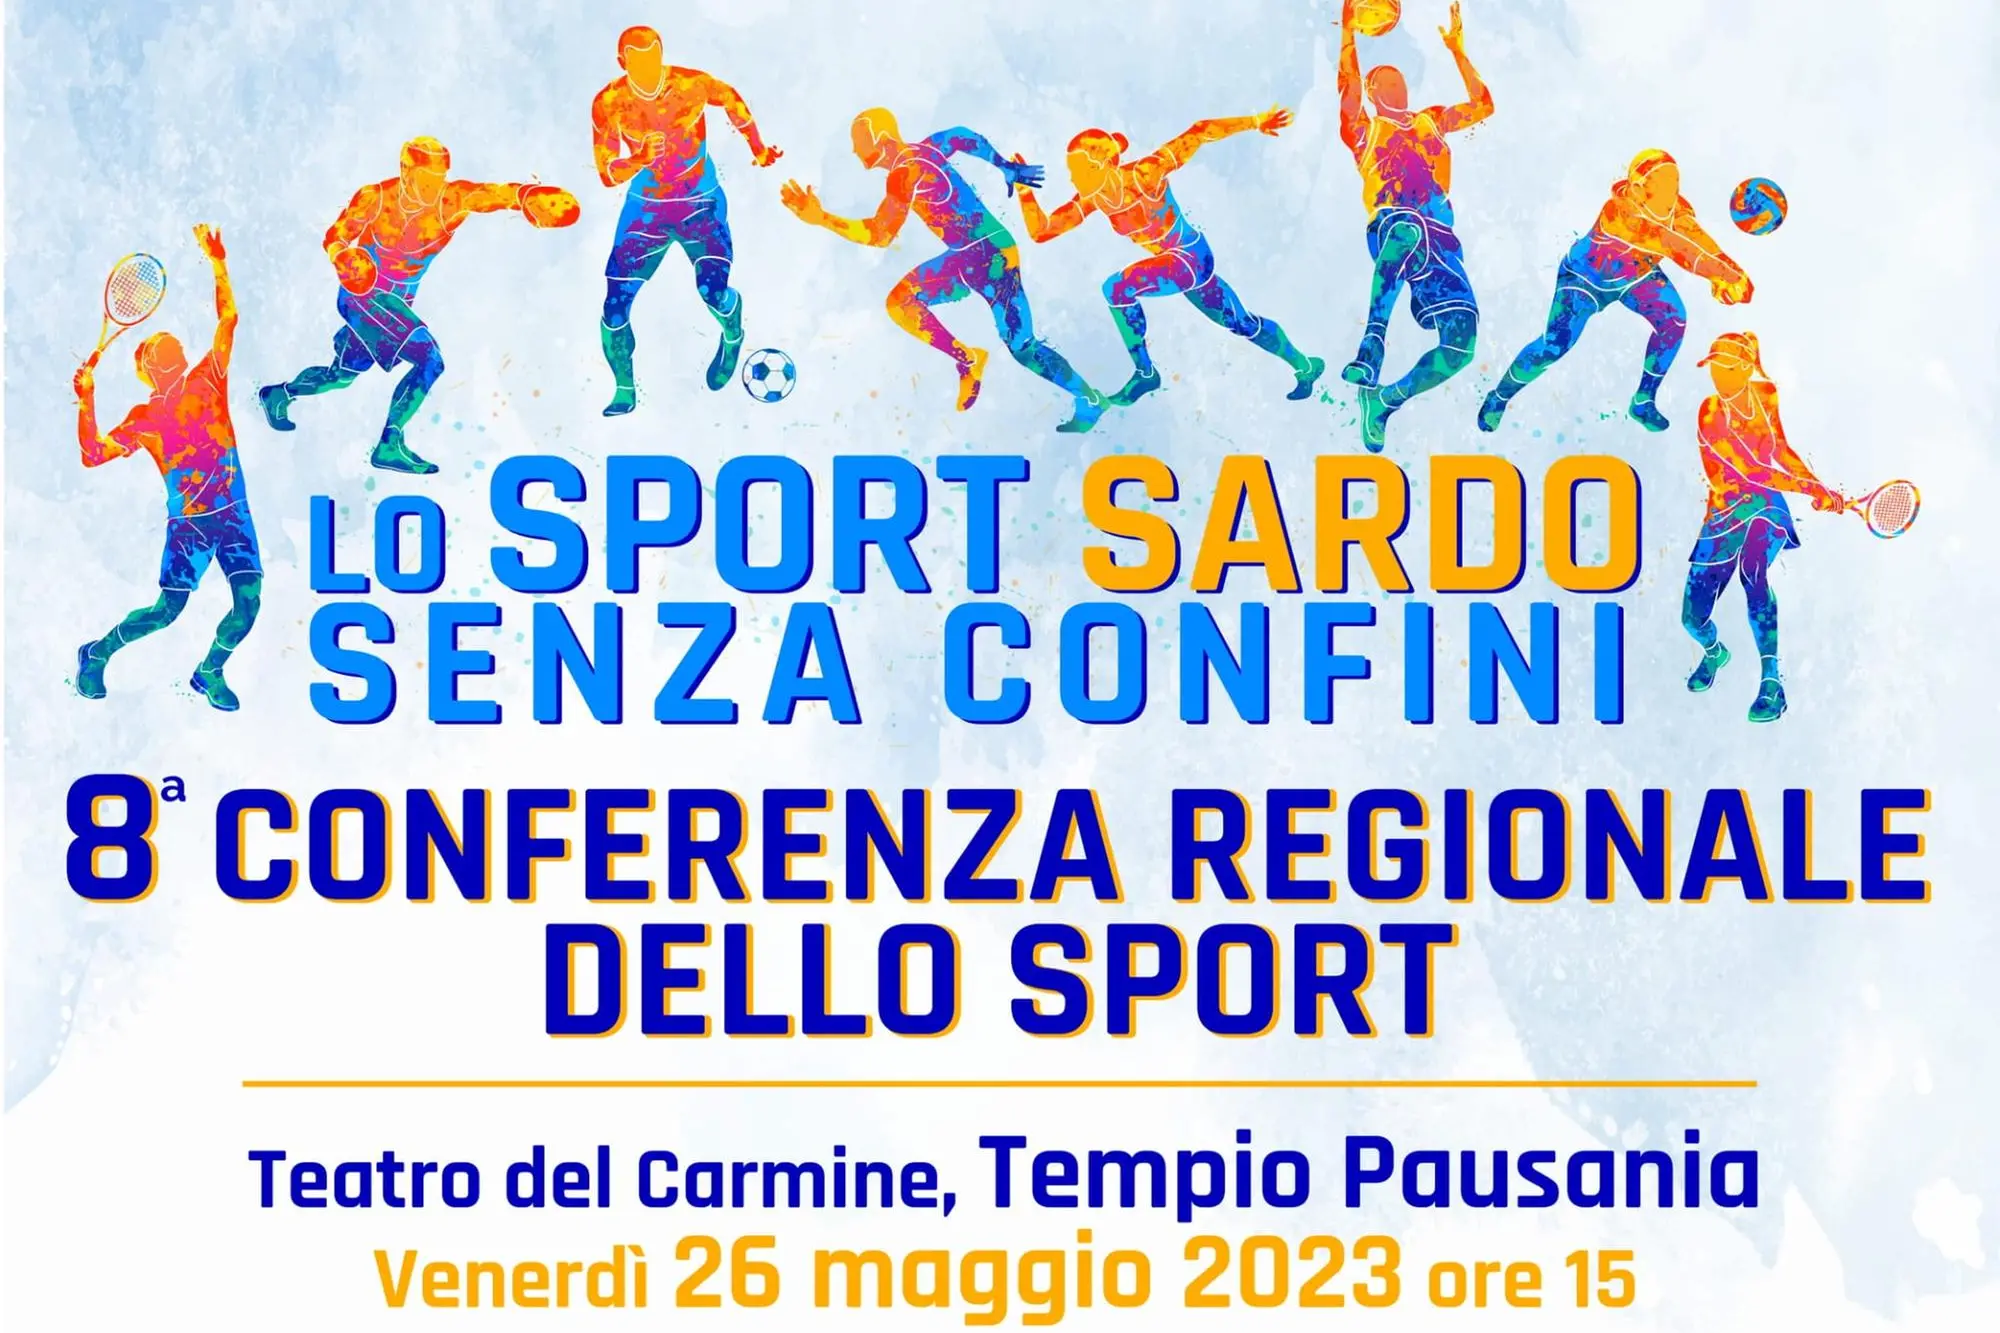 Il logo dell'evento "Lo sport sardo senza confini"